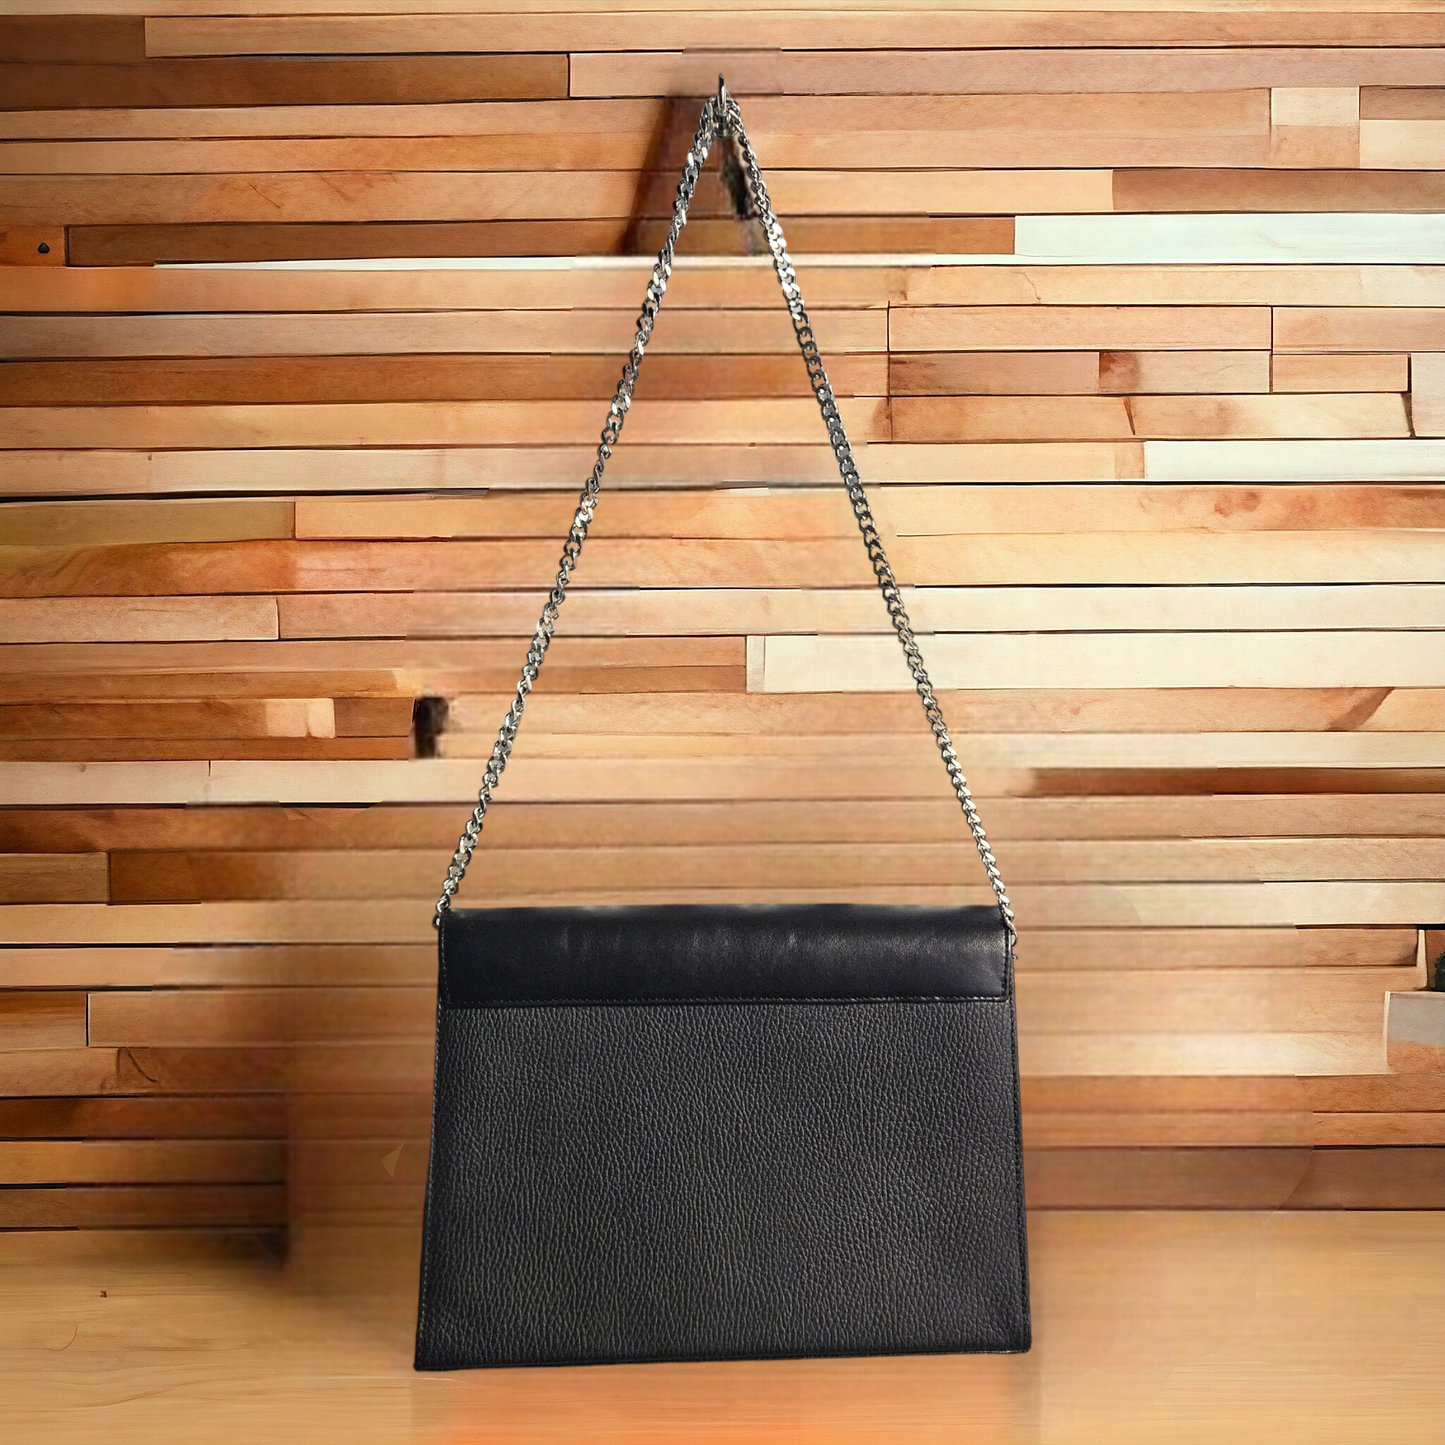 Colorful black leather shoulder bag